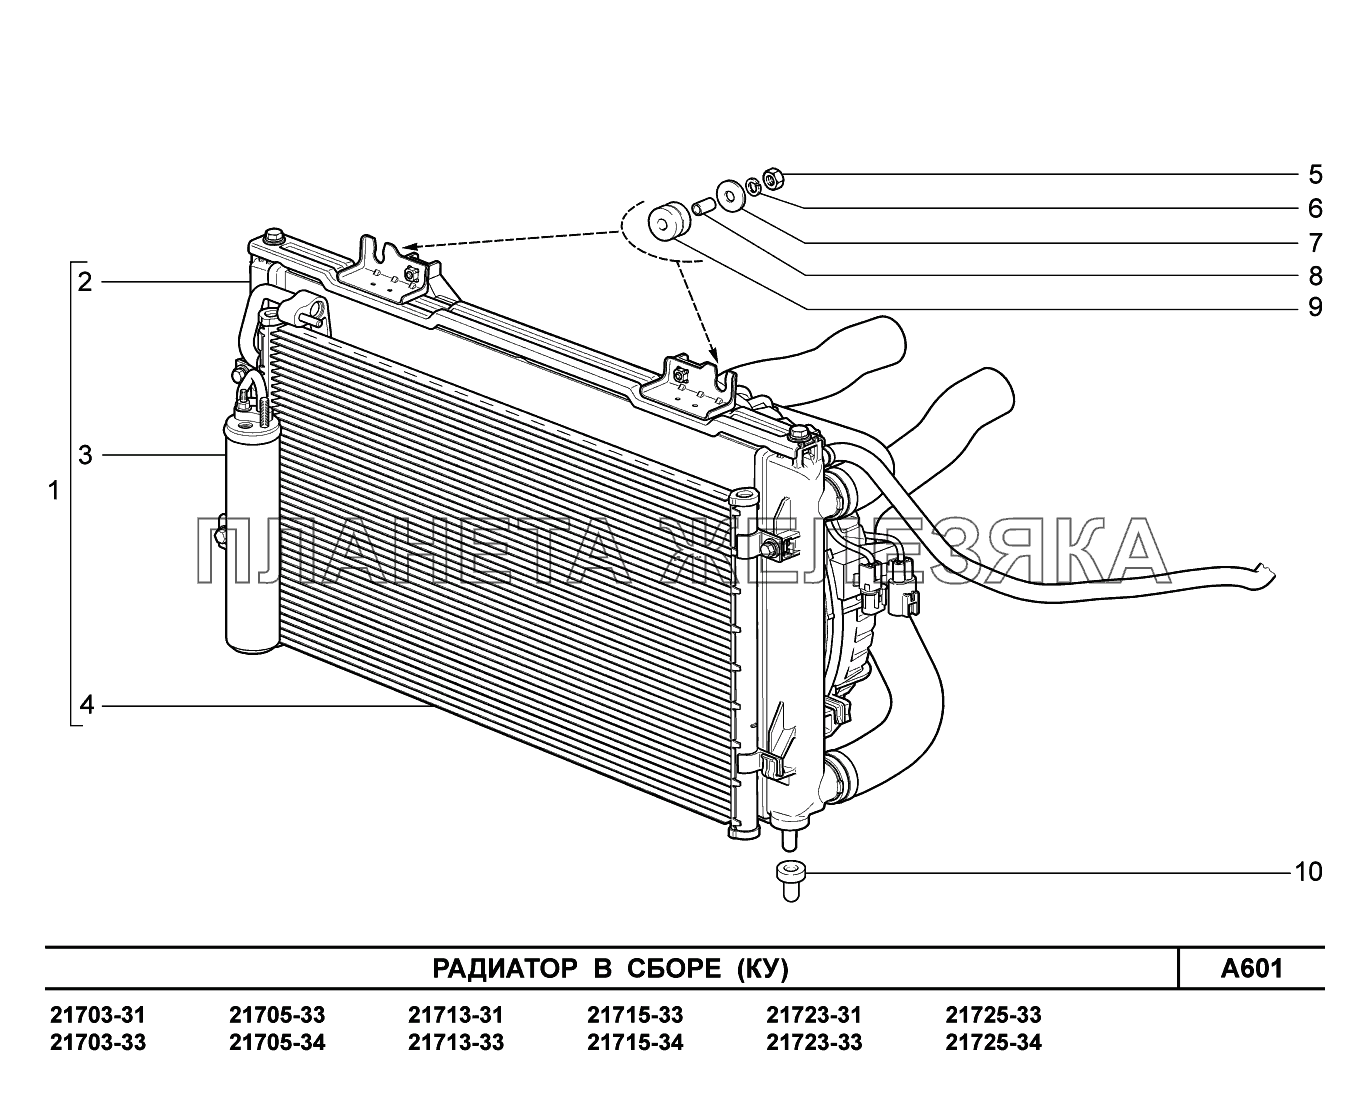 A601. Радиатор в сборе ВАЗ-2170 